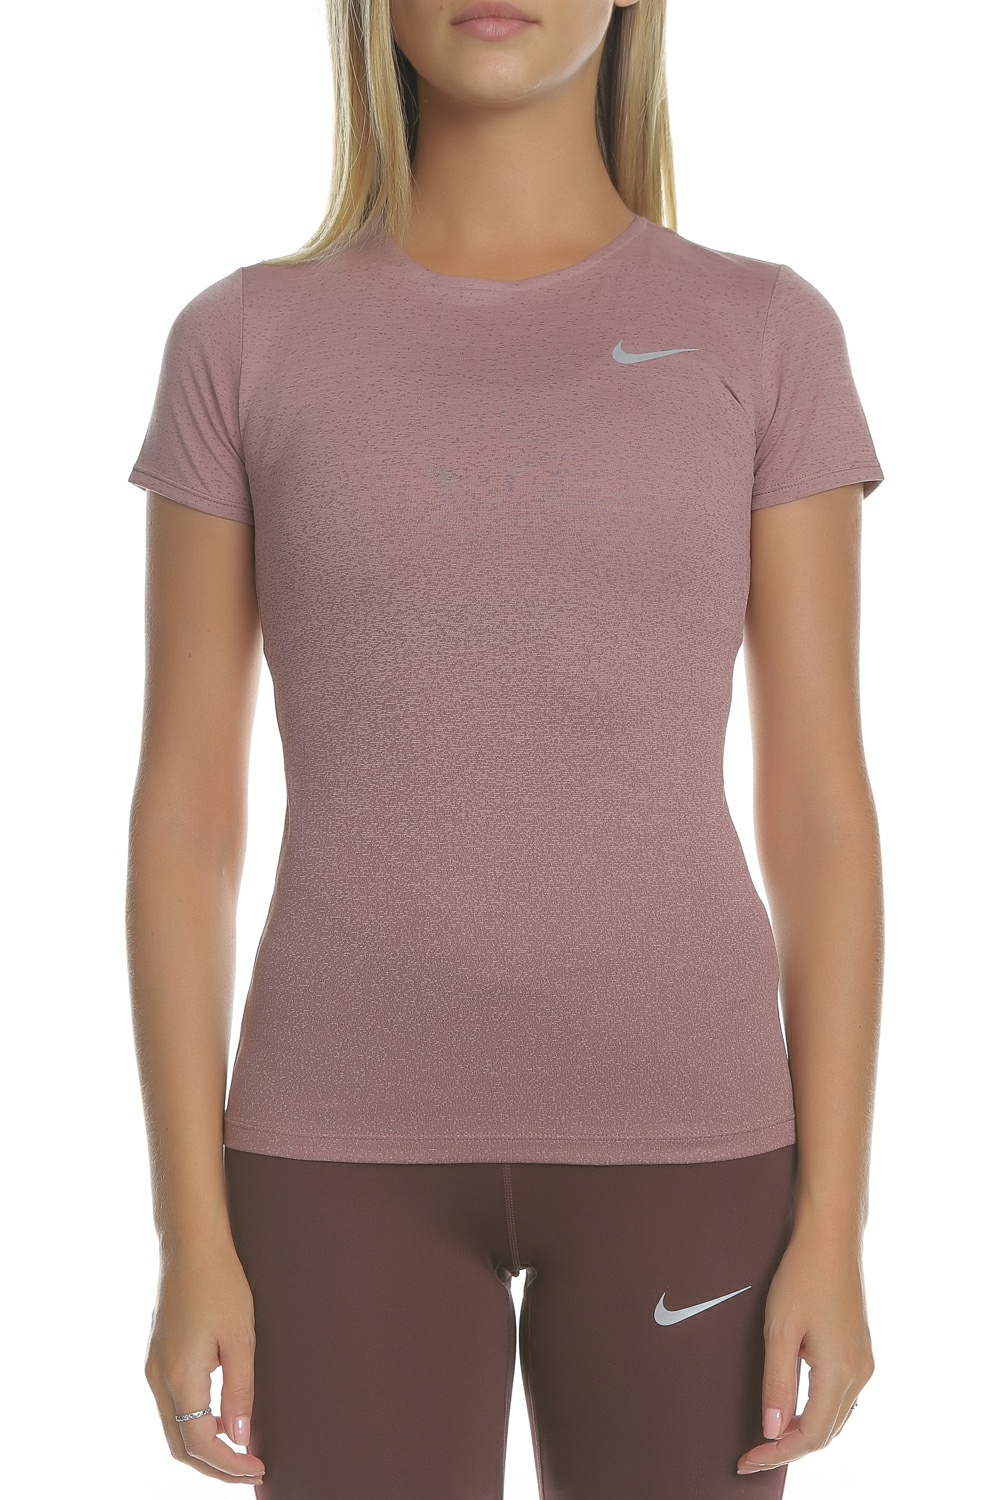 Γυναικεία/Ρούχα/Αθλητικά/T-shirt-Τοπ NIKE - Γυναικεία μπλούζα running Nike DRY MEDALIST ροζ